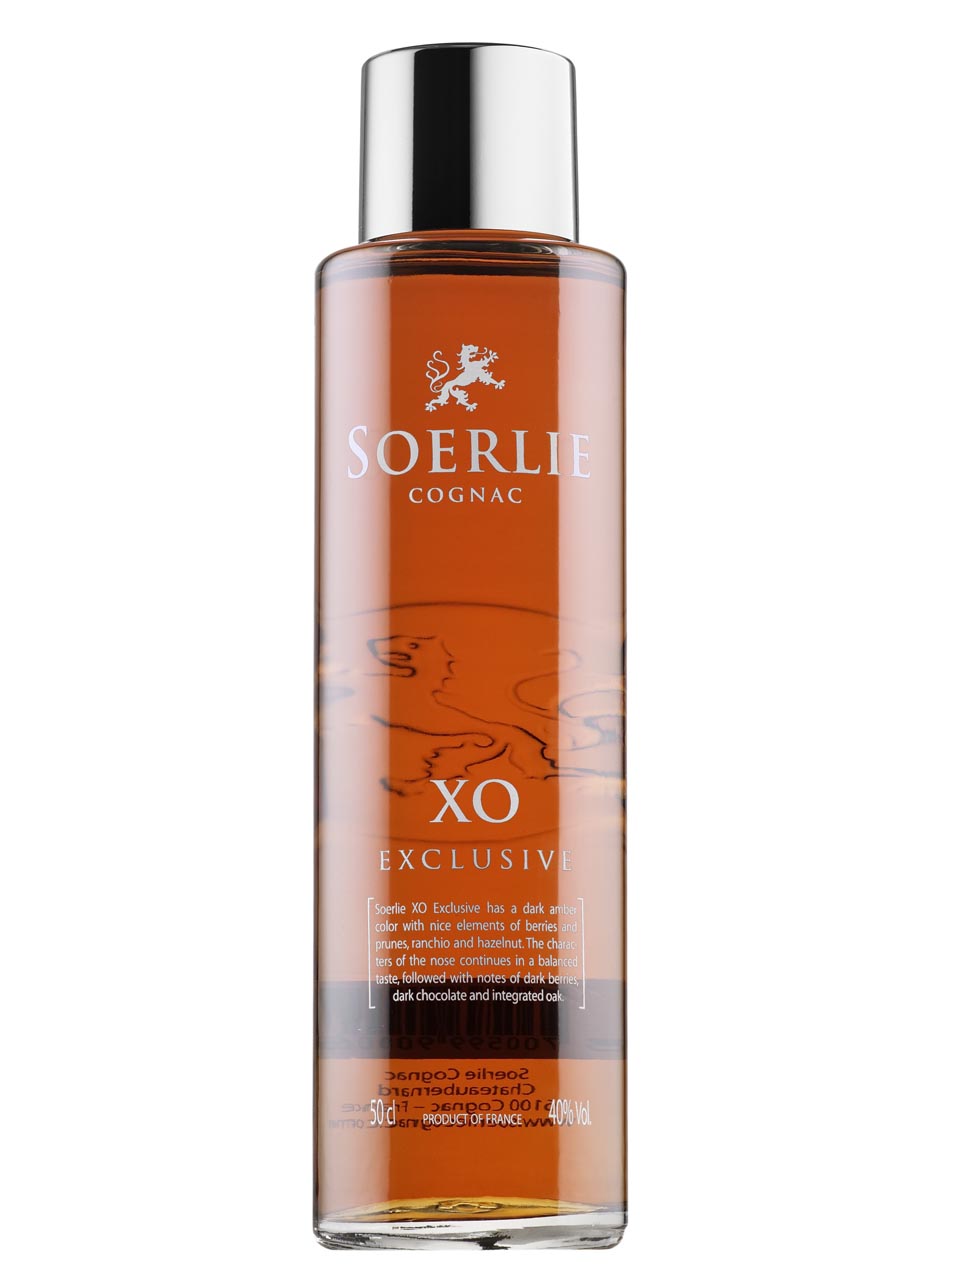 Soerlie Cognac XO Exclusive 40% 0.5L null - onesize - 1